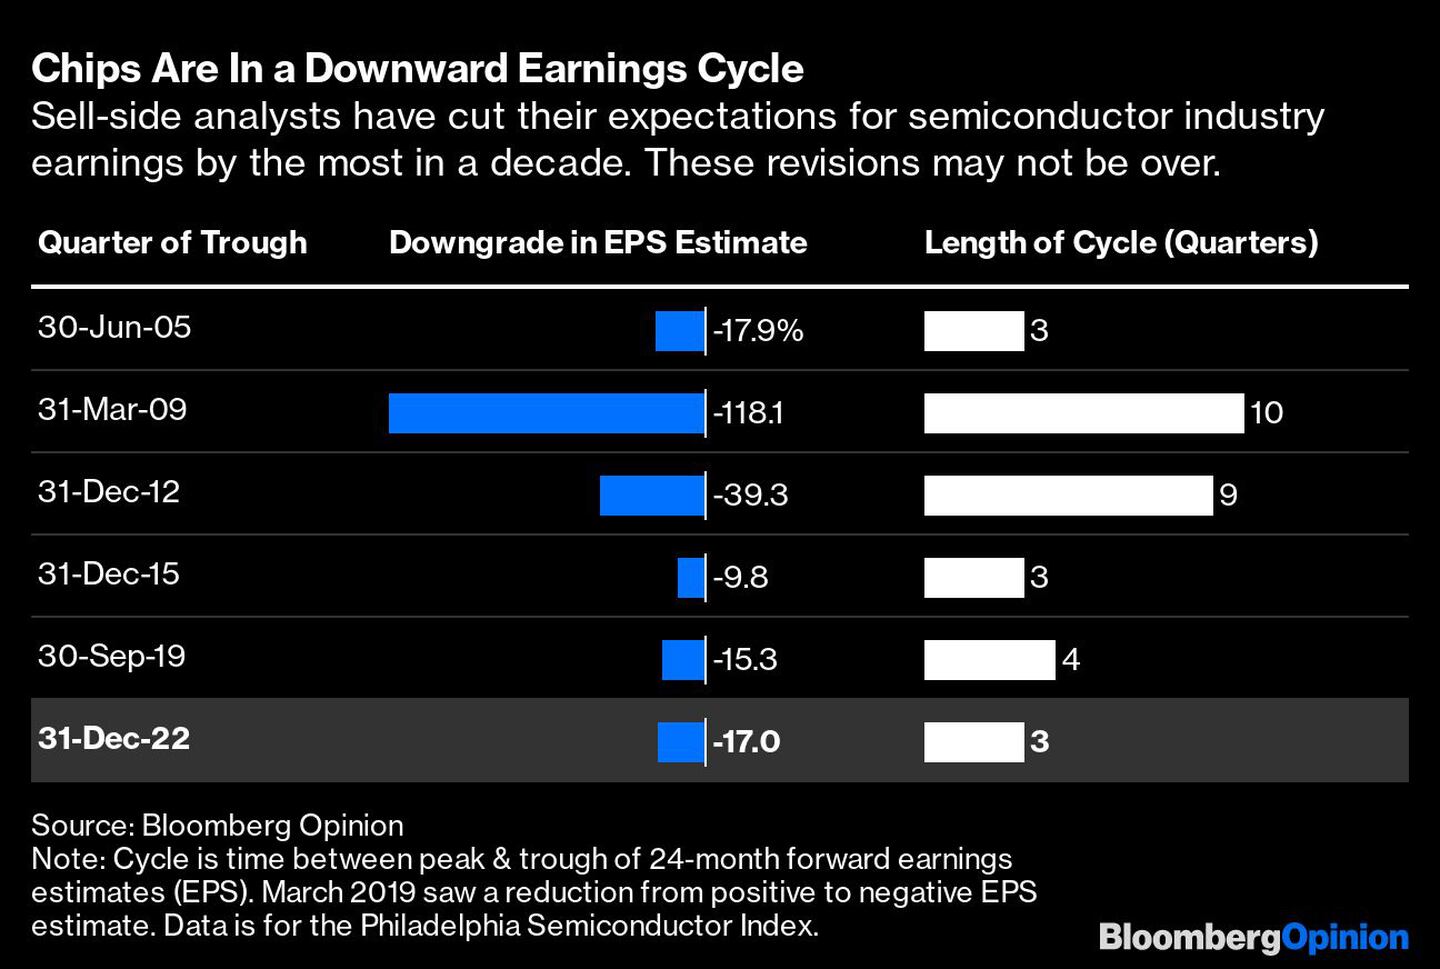 Los analistas del lado vendedor han recortado sus expectativas de beneficios de la industria de semiconductores al máximo en una década. Es posible que estas revisiones no hayan terminado.dfd